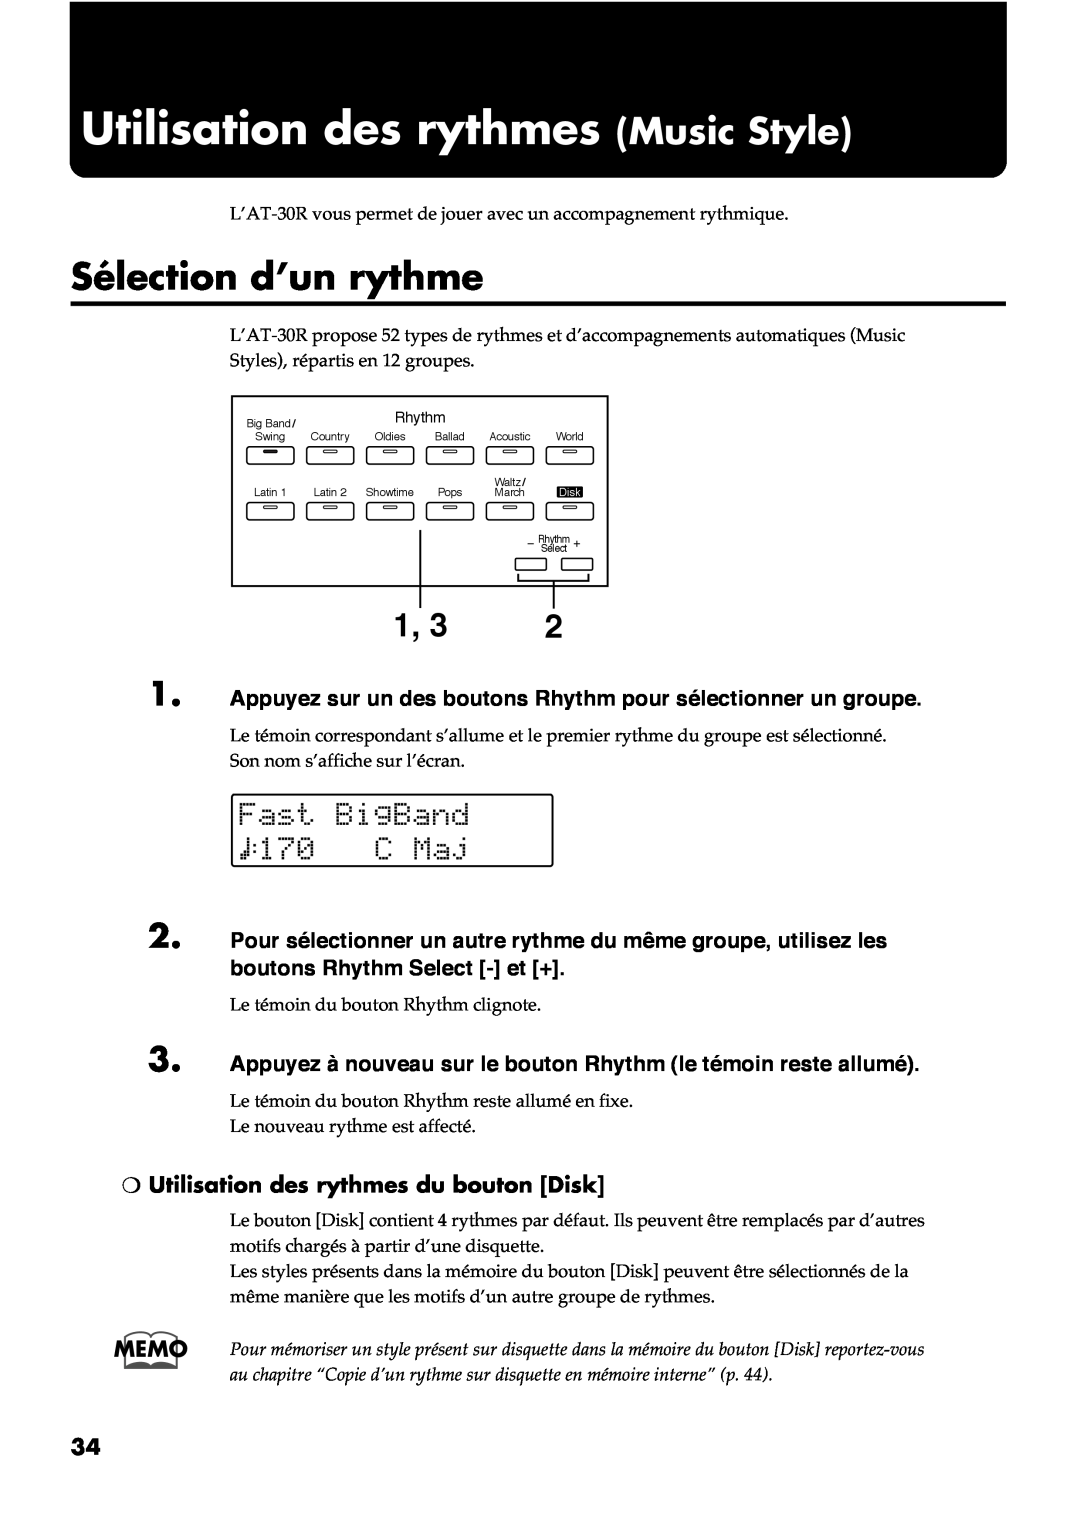 Roland AT30R manual Utilisation des rythmes Music Style, Sélection d’un rythme, Utilisation des rythmes du bouton Disk 